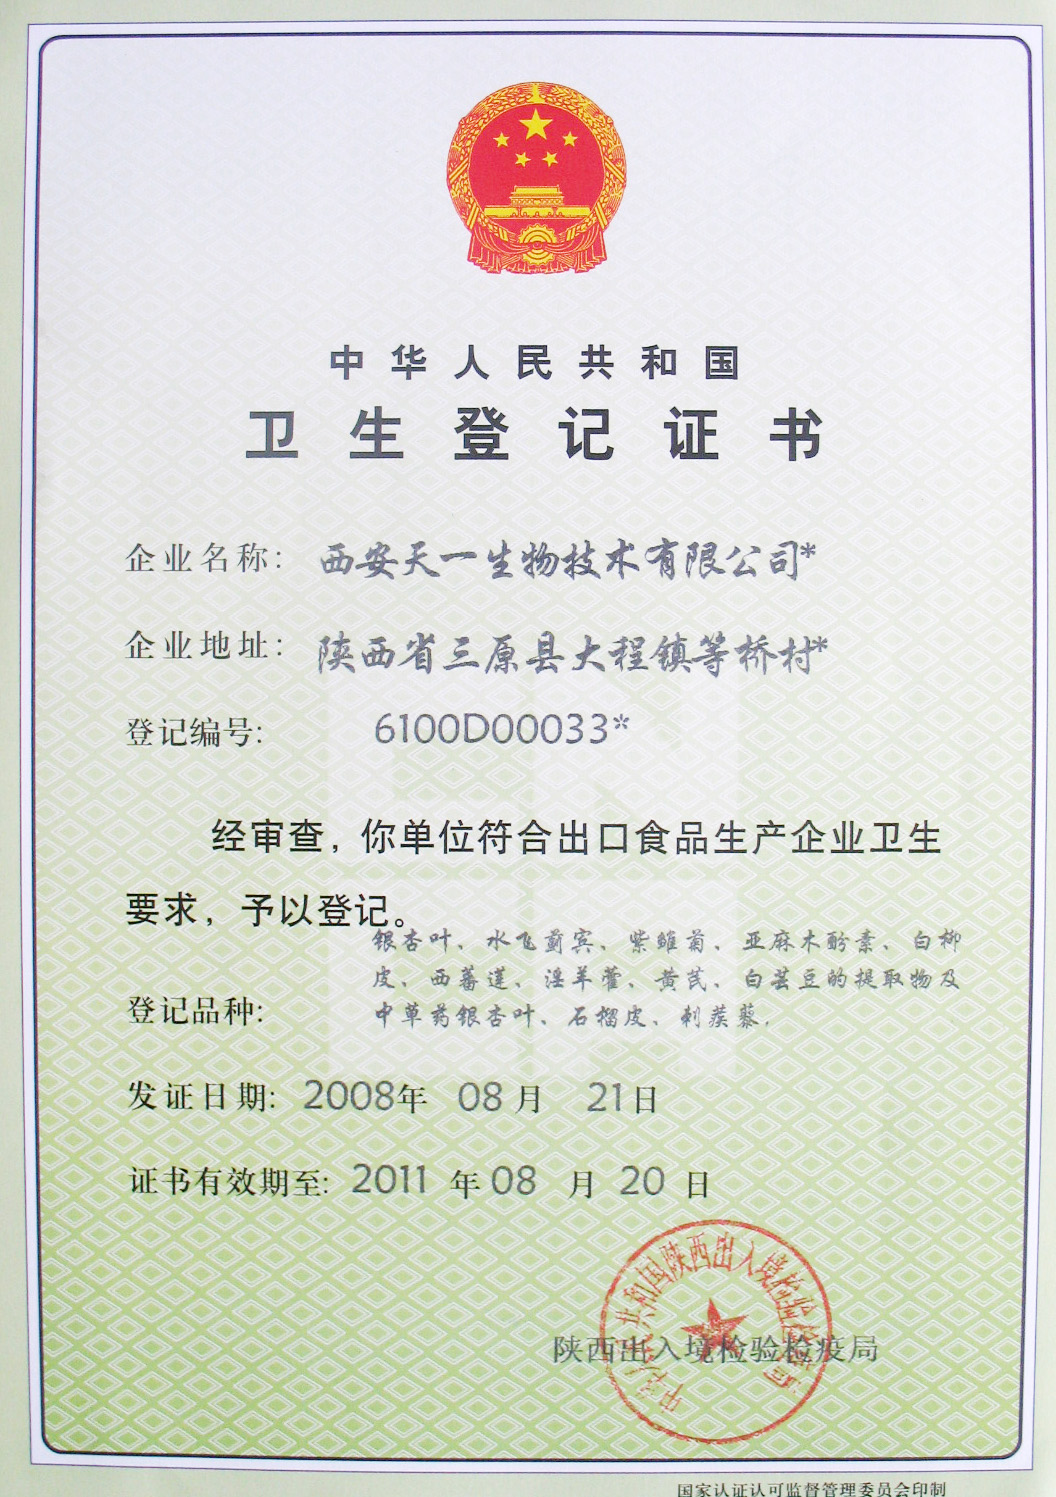 《中华人名共和国卫生登记证书》